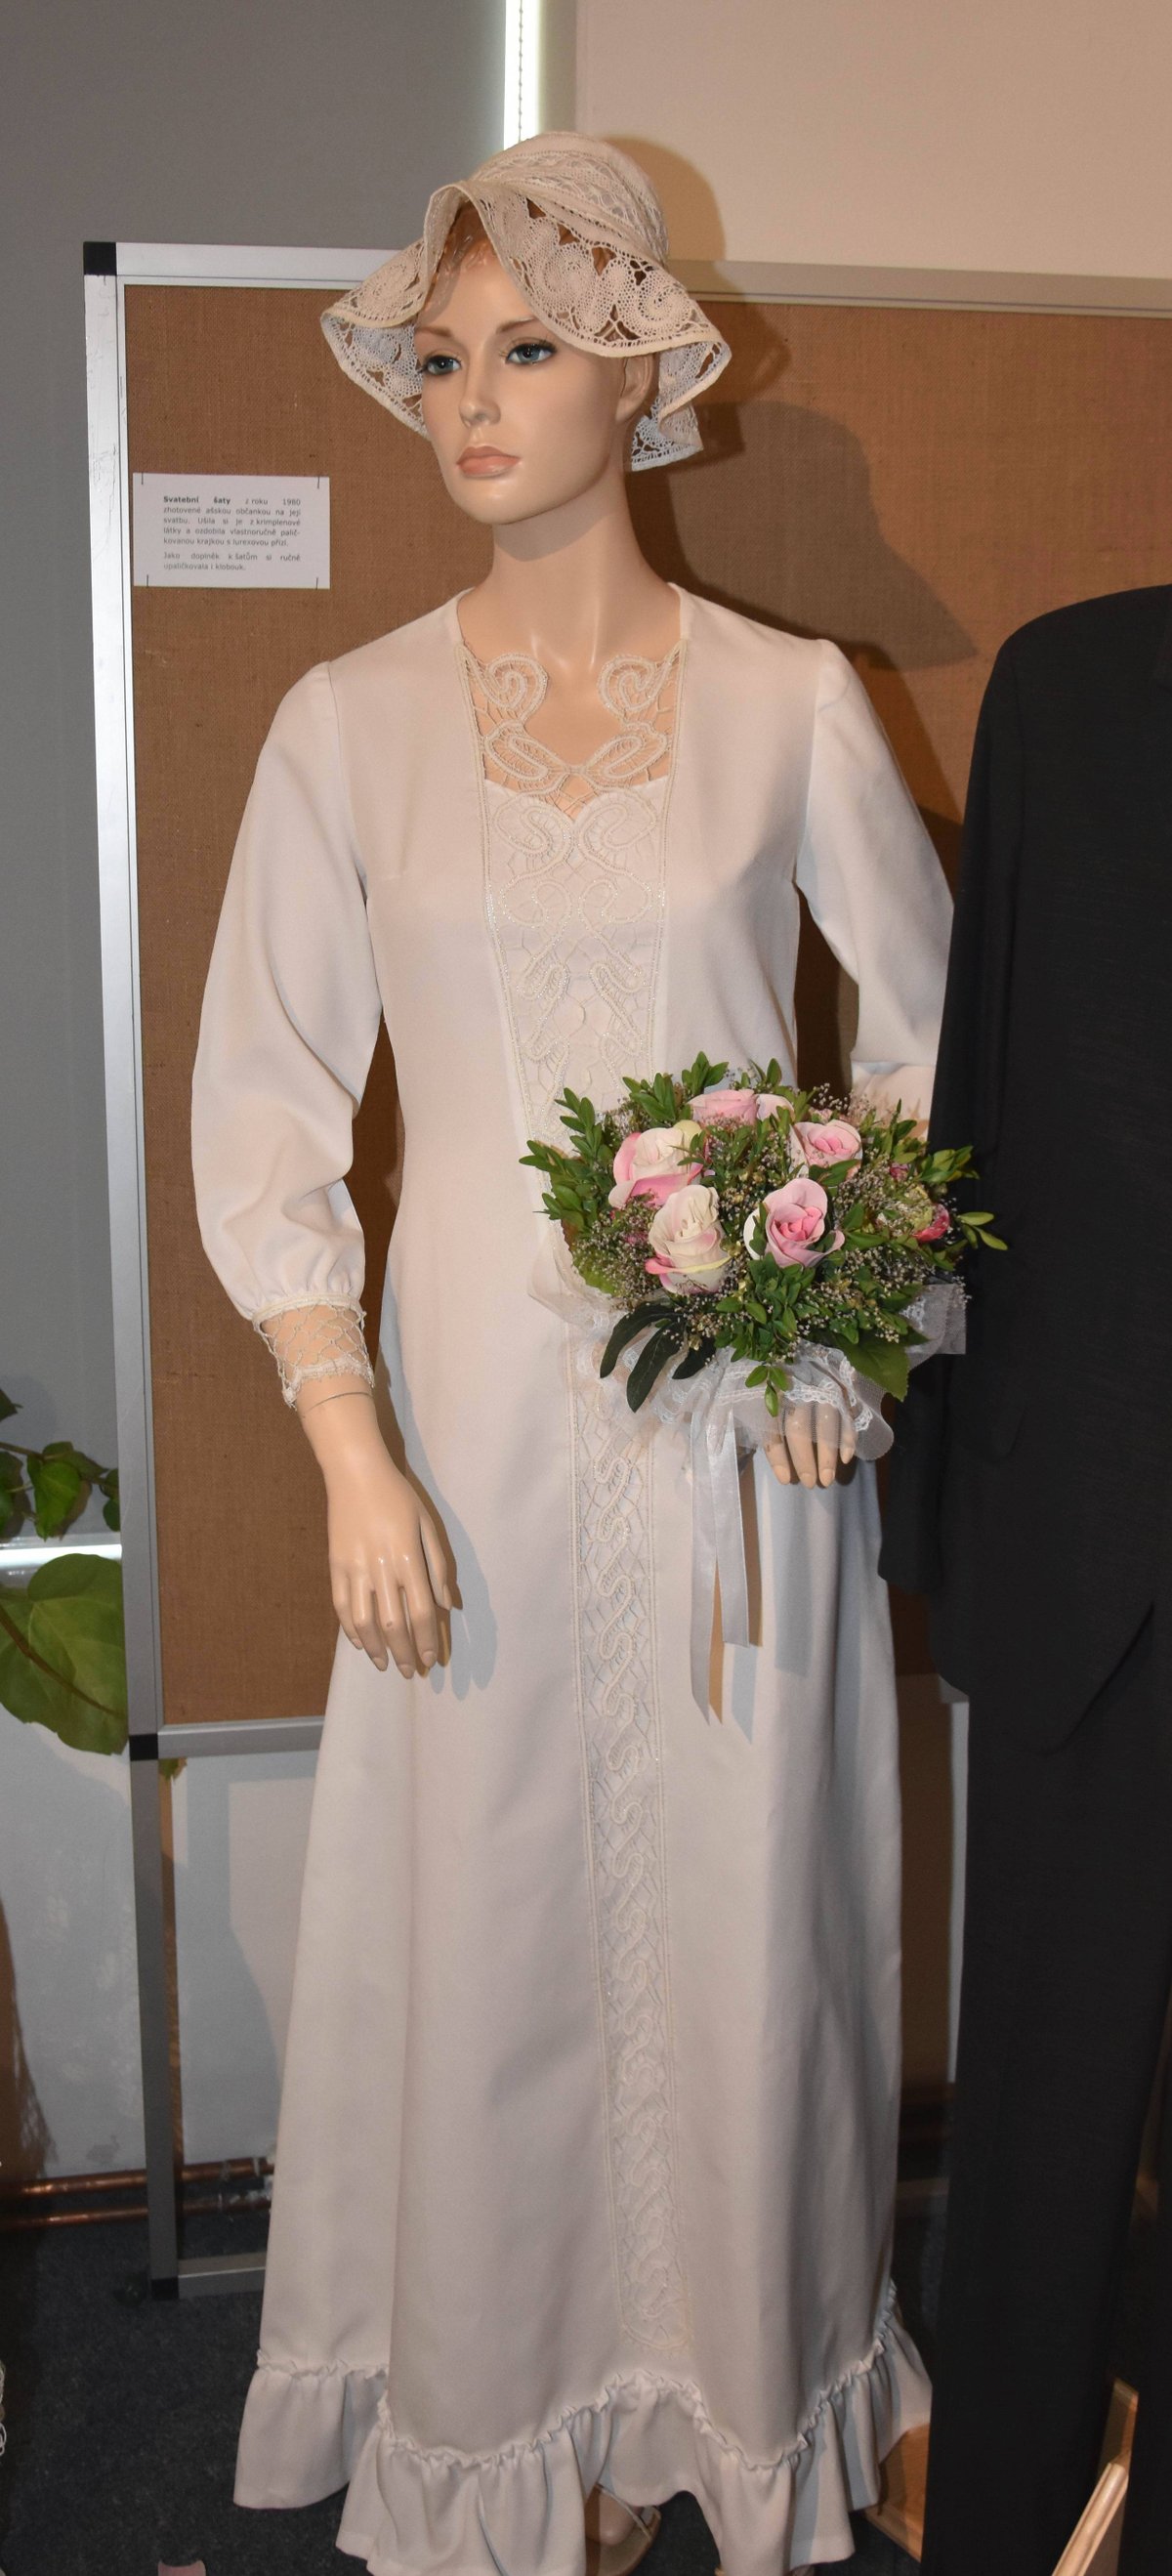 Svatební šaty z roku 1980. Zhotovila si je místní ašská občanka na svou svatbu. Ušila si je z krimplenové látky a ozdobila vlastnoručně paličkovanou krajkou s lurexovou přízí. Jako doplněk k šatům si ručně upaličkovala i klobouk.